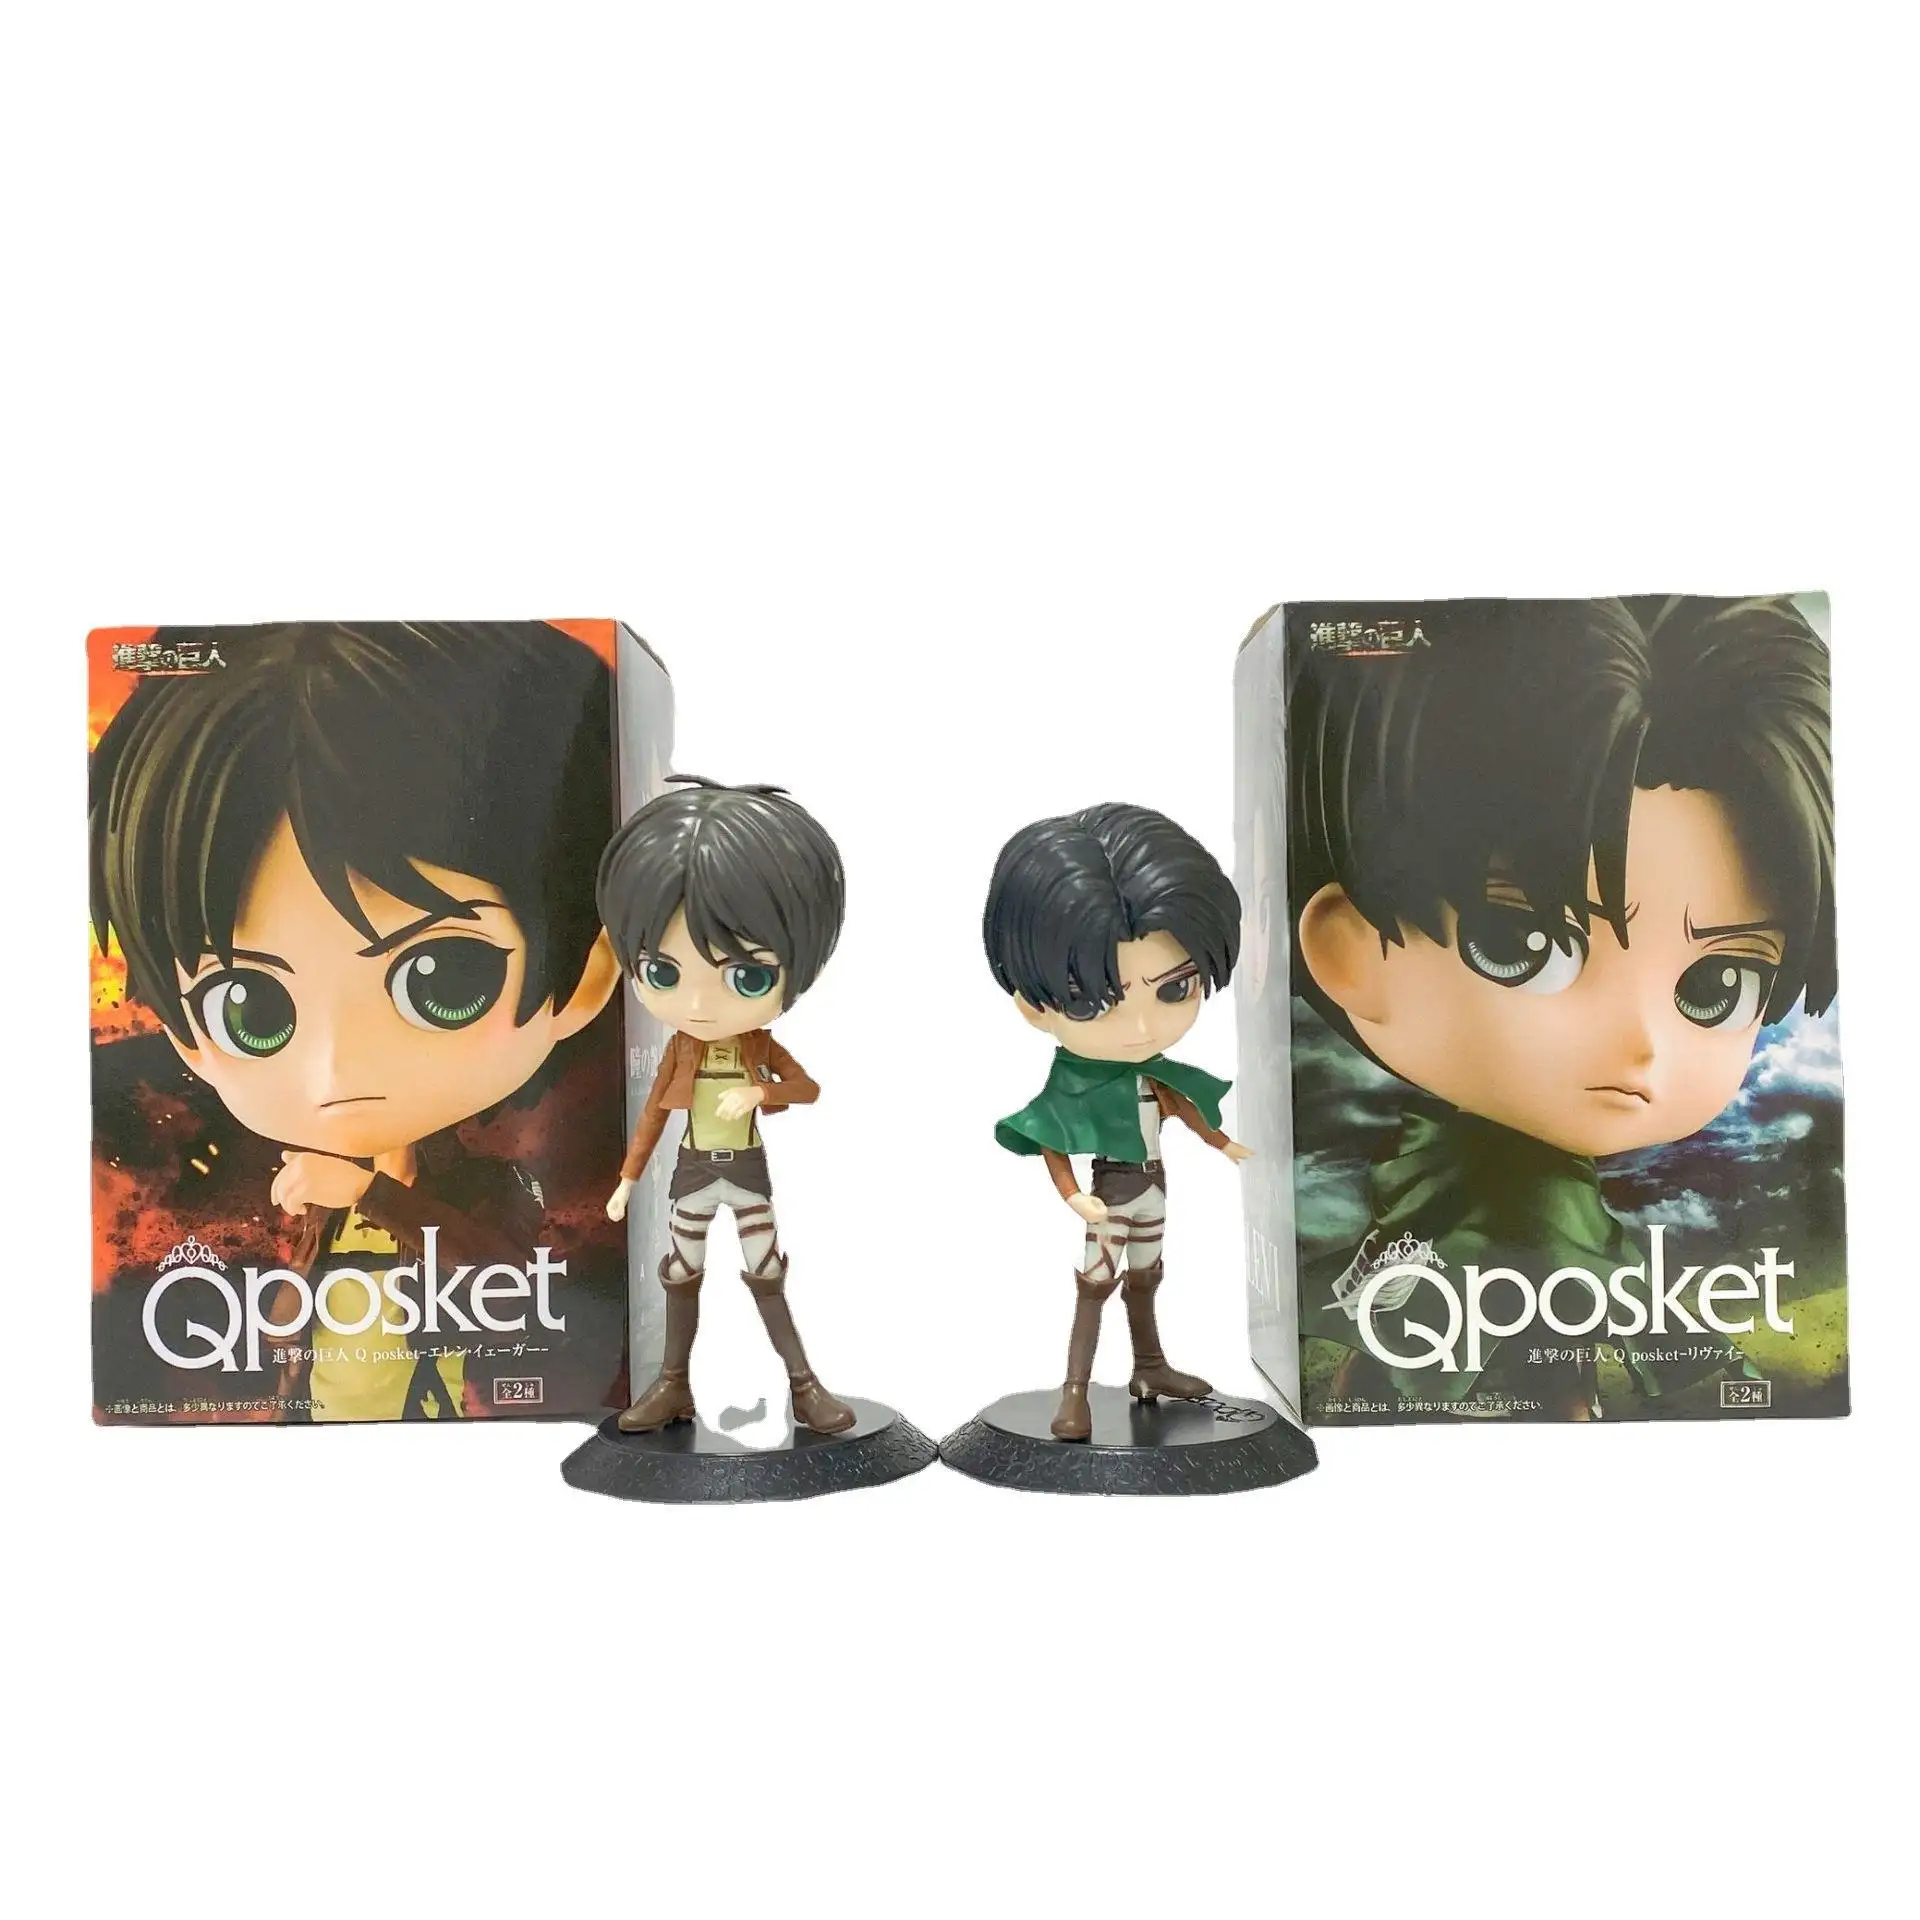 Var kutusu Titan japonya moda Anime masa modelleri aksiyon figürleri çocuk Boys küçük kız çocuk oyuncakları